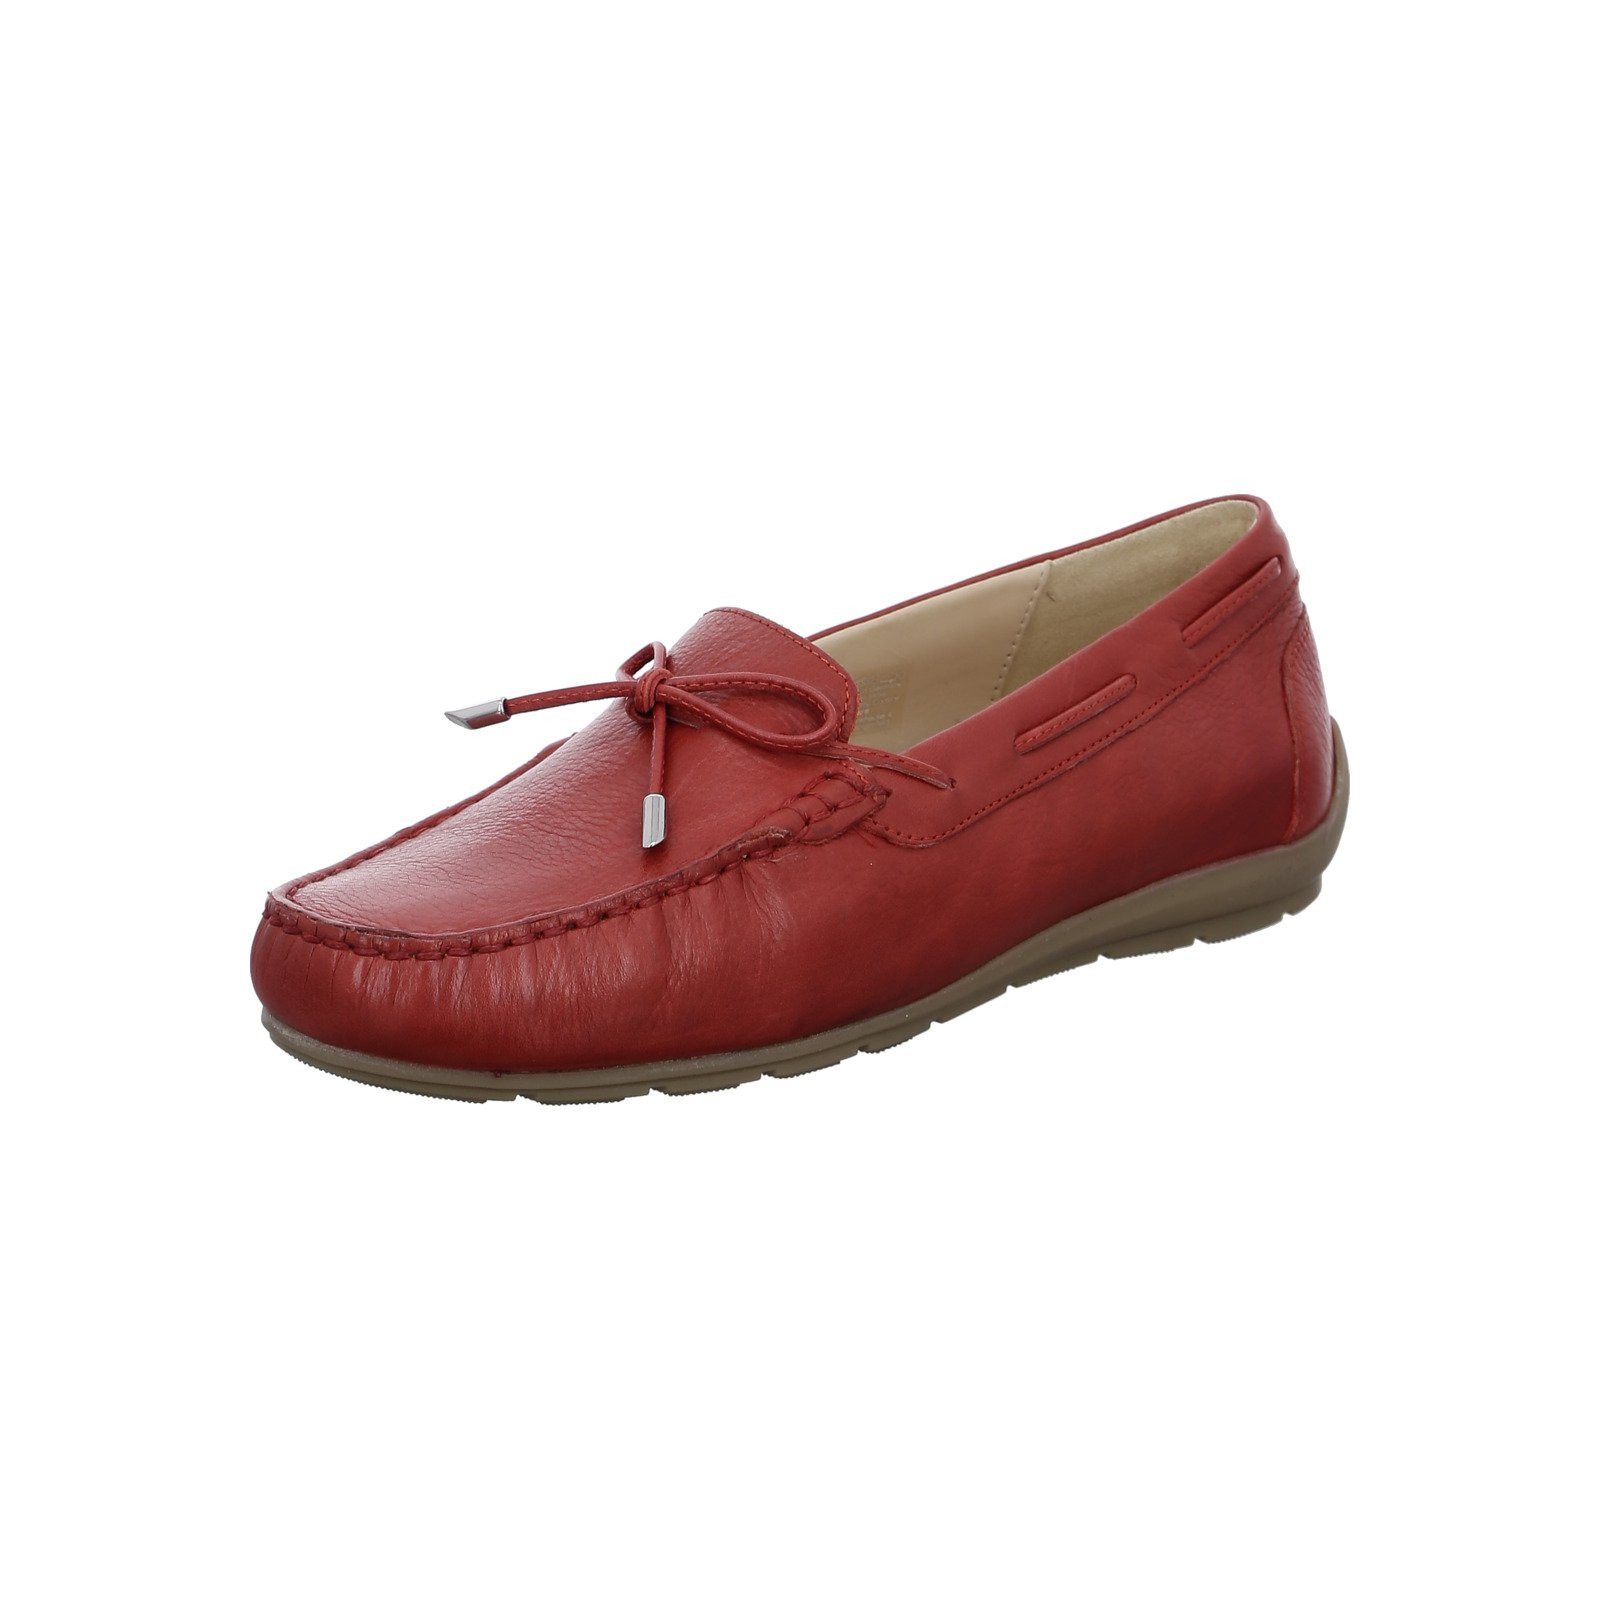 Ara Alabama - Damen Schuhe Slipper rot